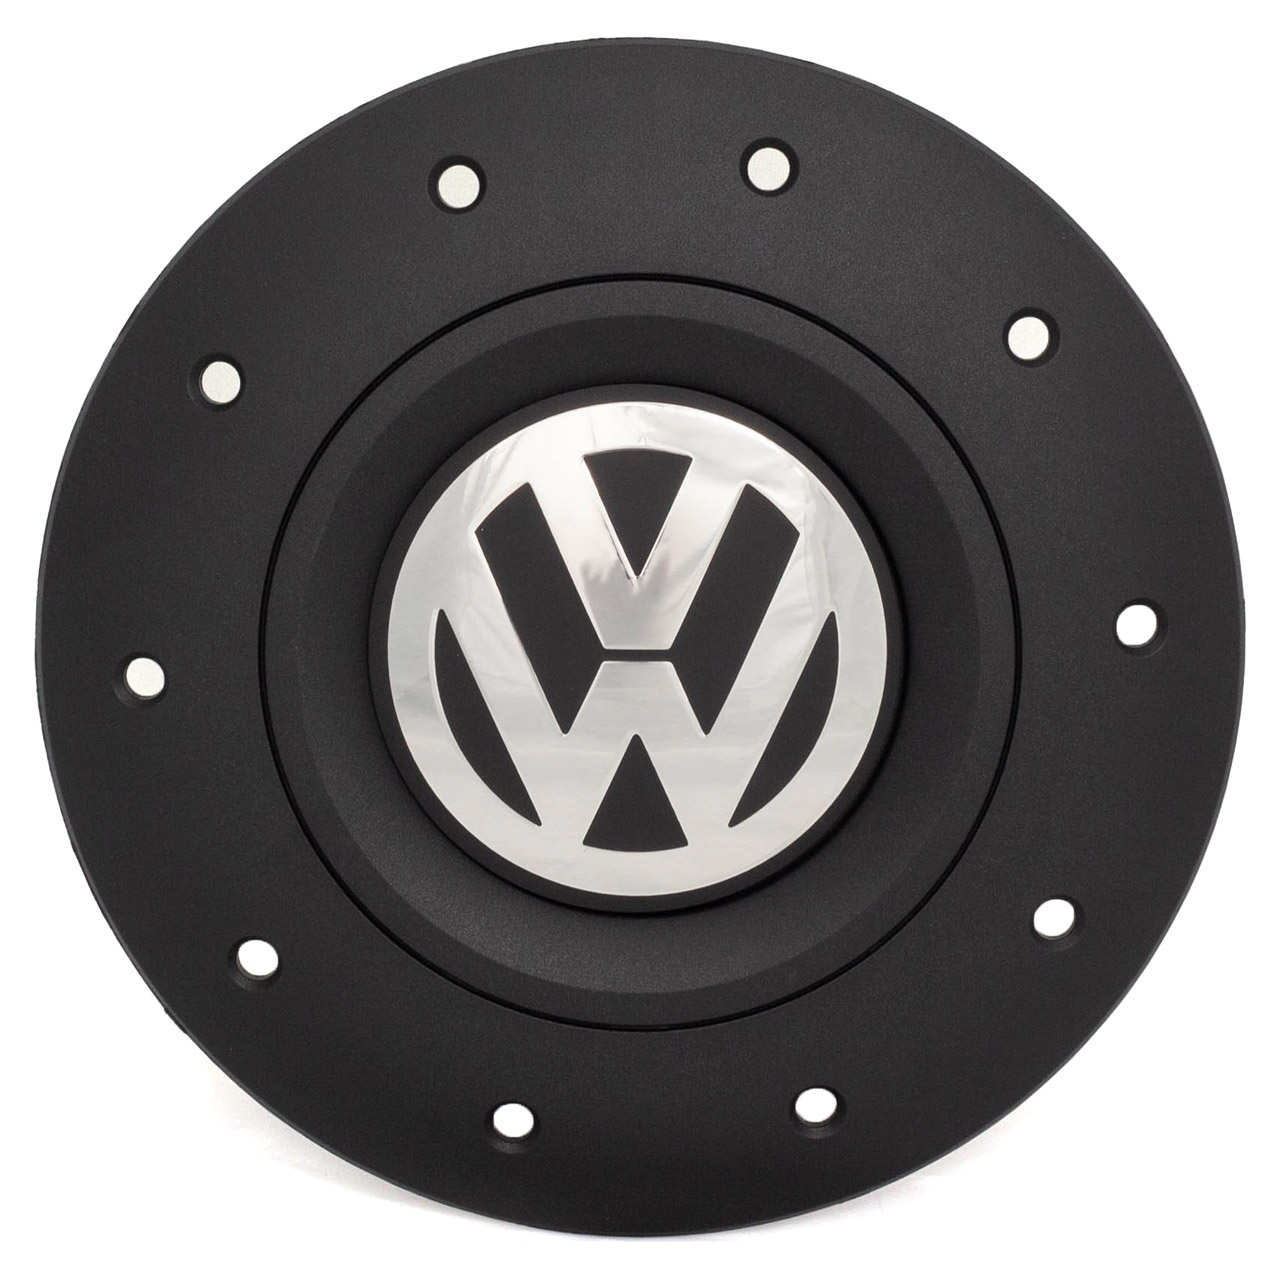 1x ORIGINAL VW Abdeckkappe Radnabe für 16 Zoll Stahlfelge T5 T6 Amarok 7H0601151B RVB